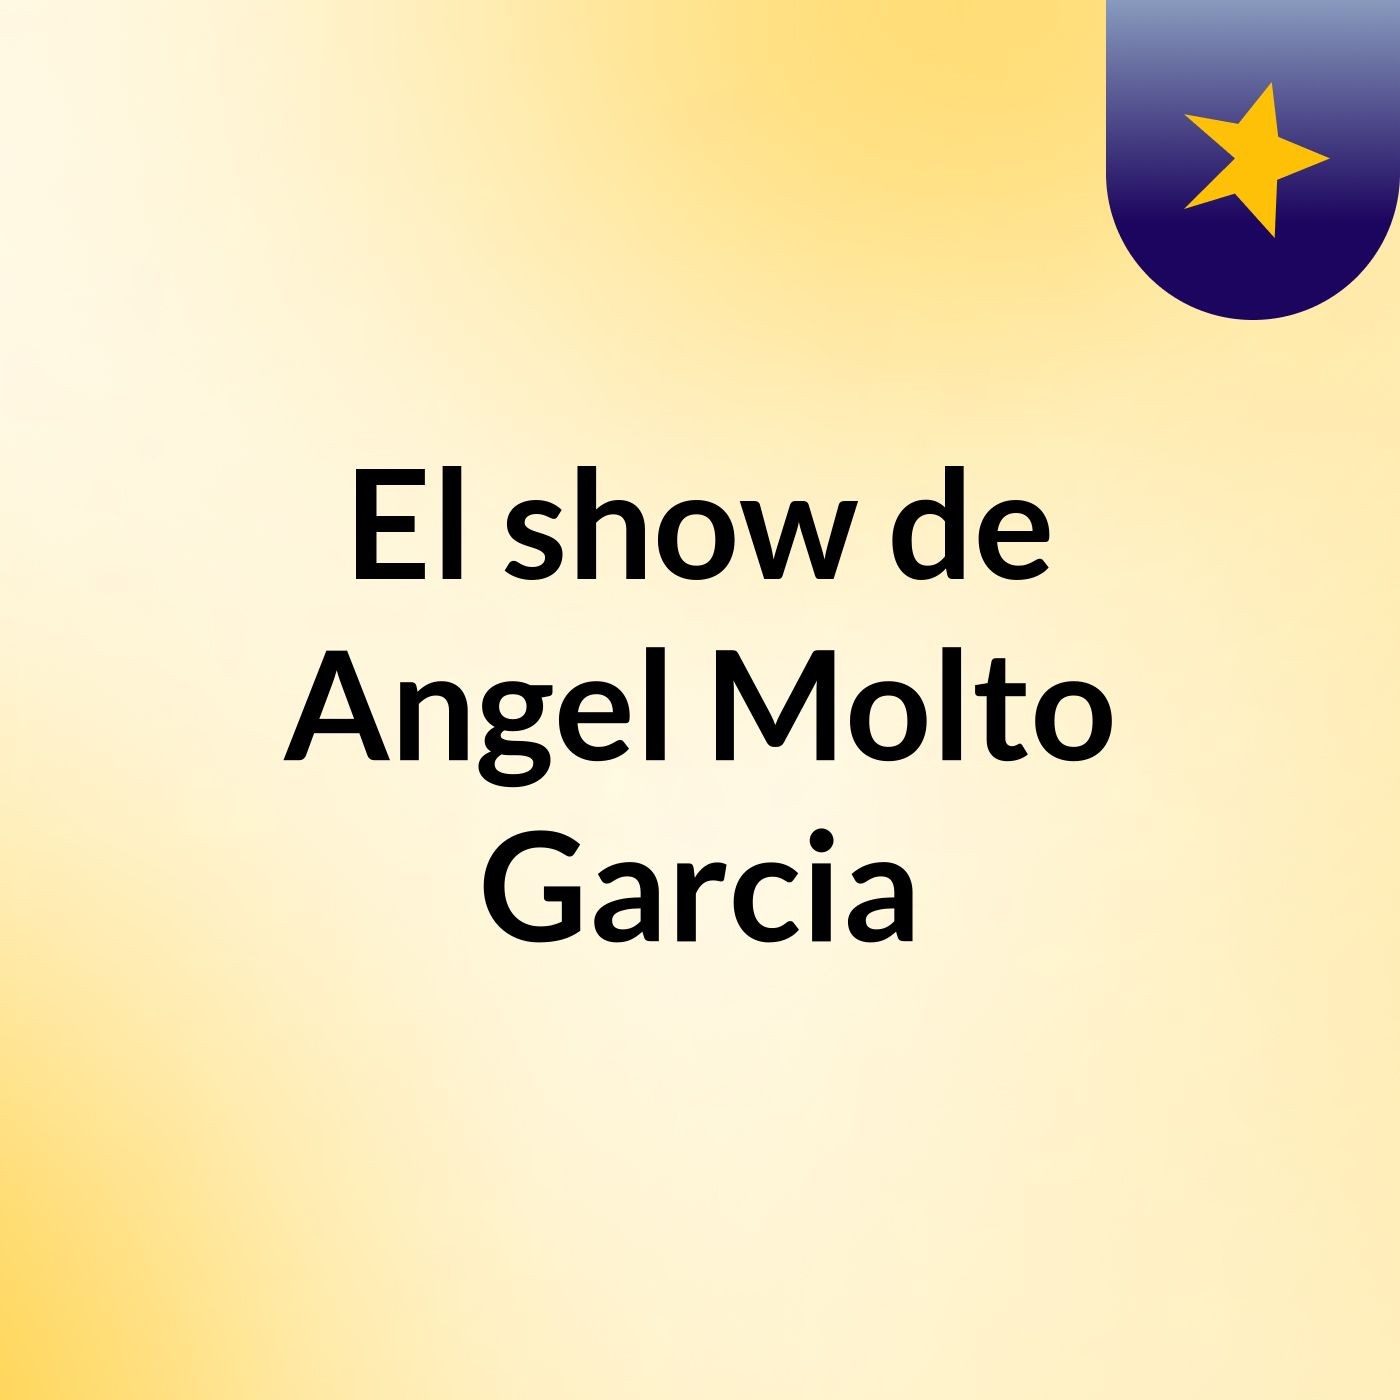 El show de Angel Molto Garcia